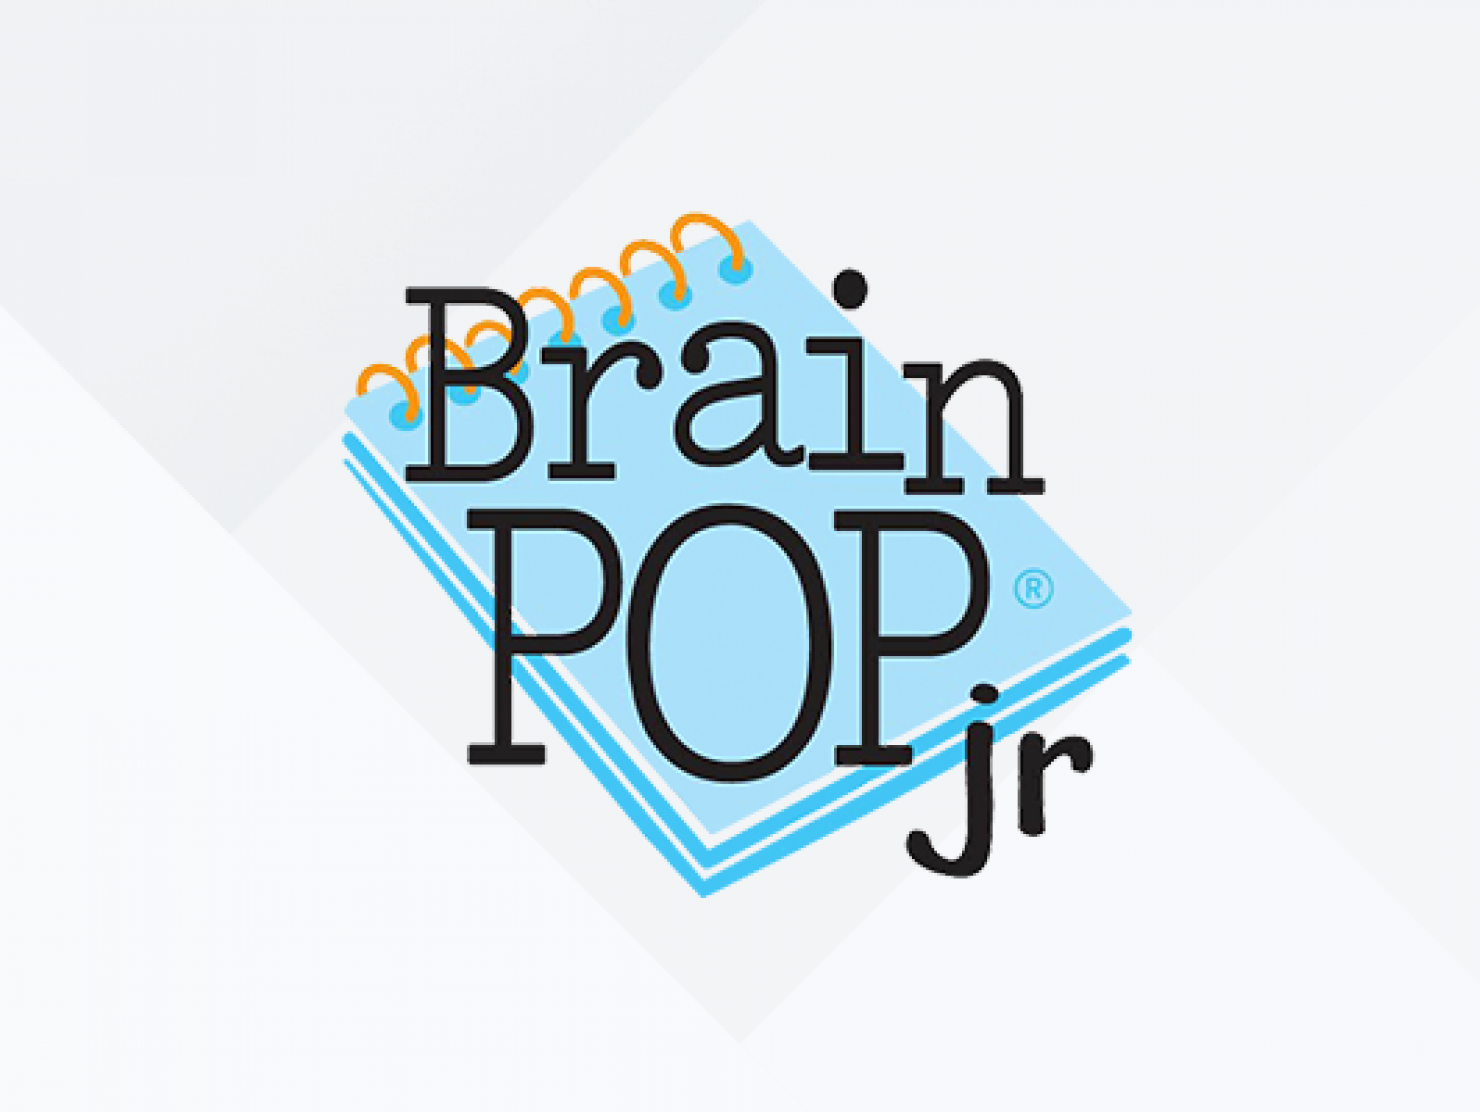 brainpop login information